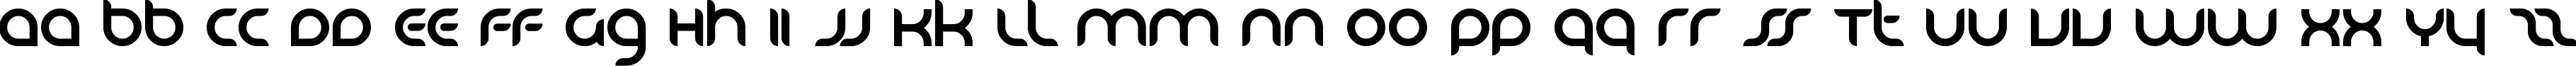 Пример написания английского алфавита шрифтом KB Danube